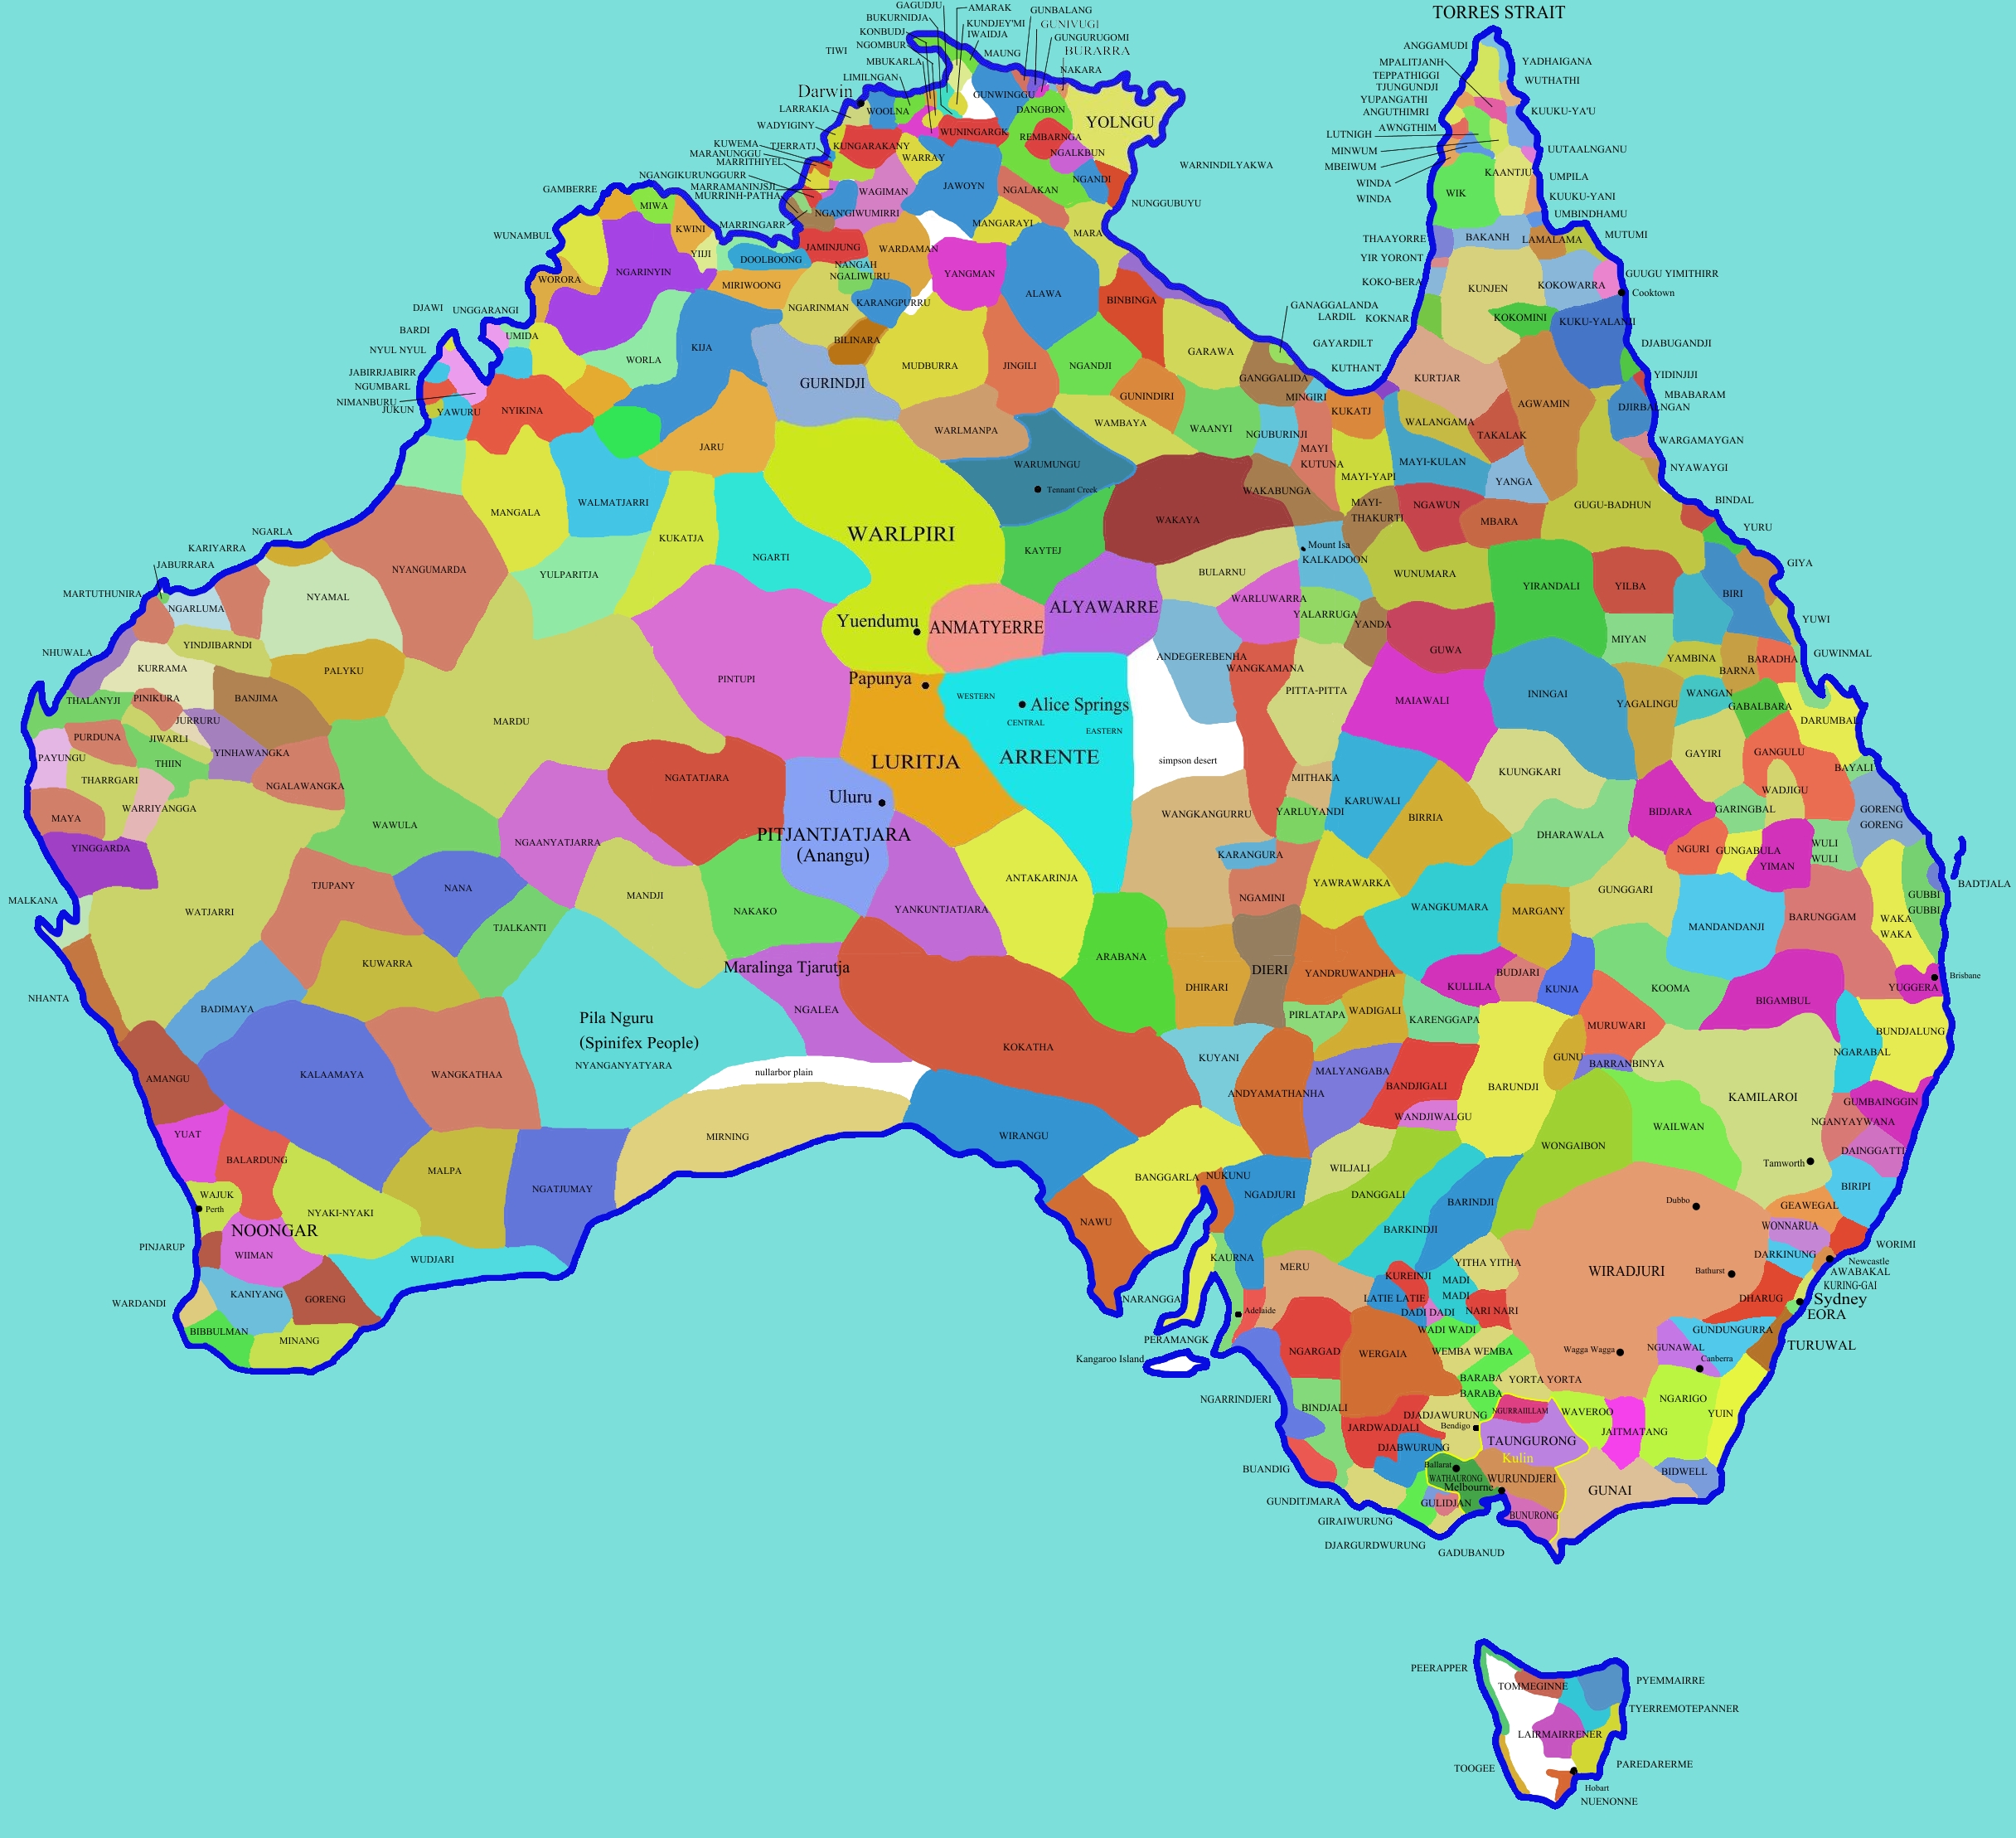 http://mappery.com/maps/Australia-Aboriginal-Tribes-Map.jpg